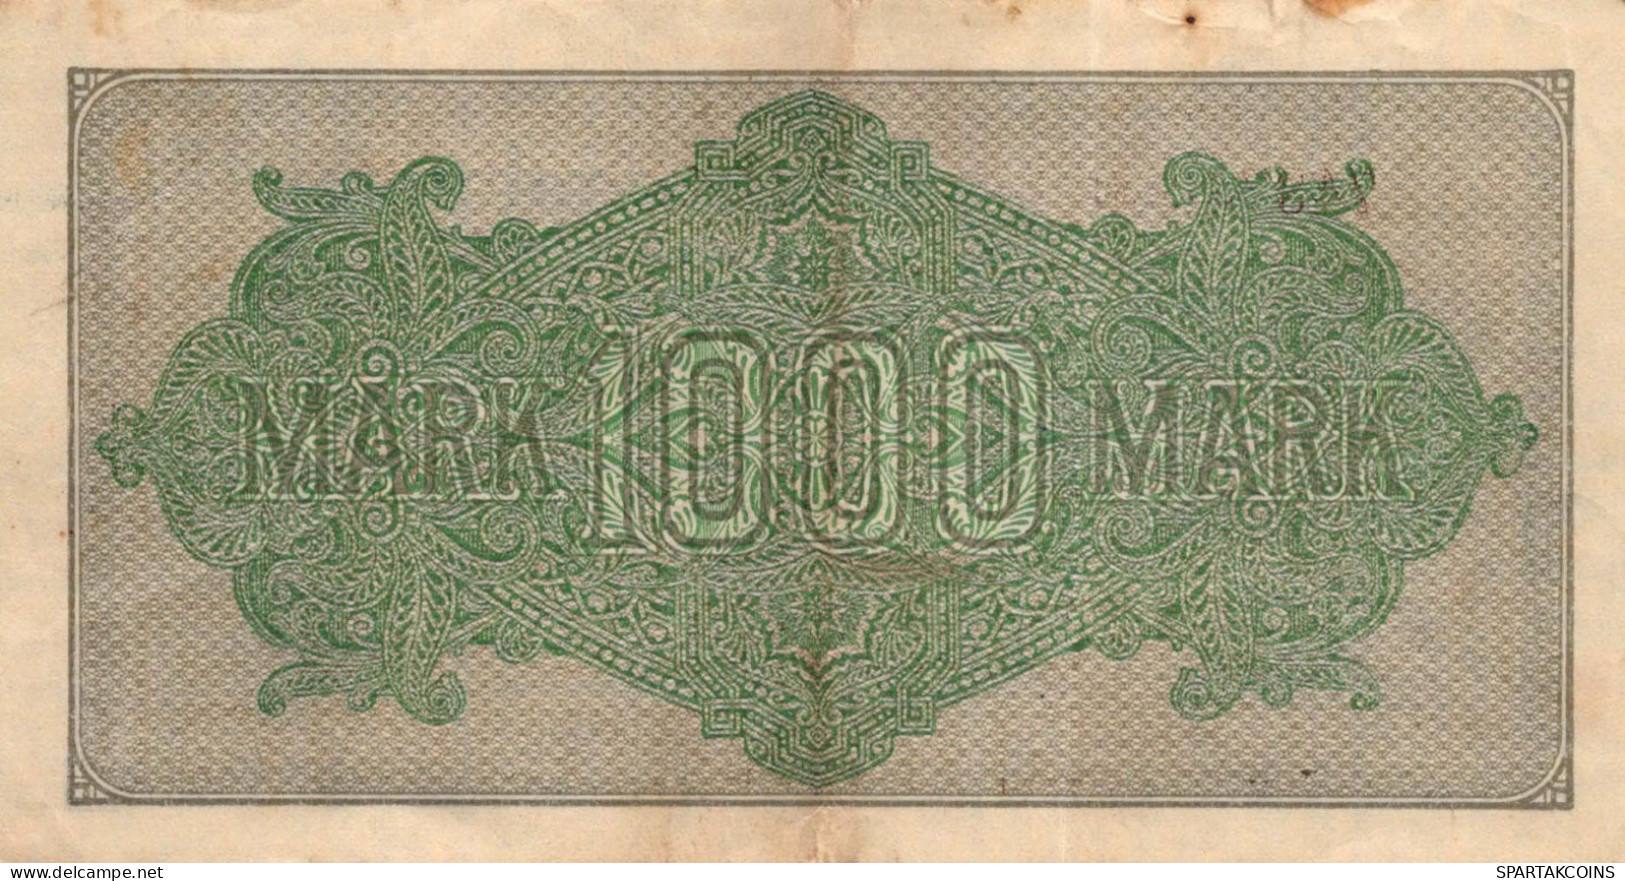 1000 MARK 1922 Stadt BERLIN DEUTSCHLAND Papiergeld Banknote #PL438 - [11] Local Banknote Issues